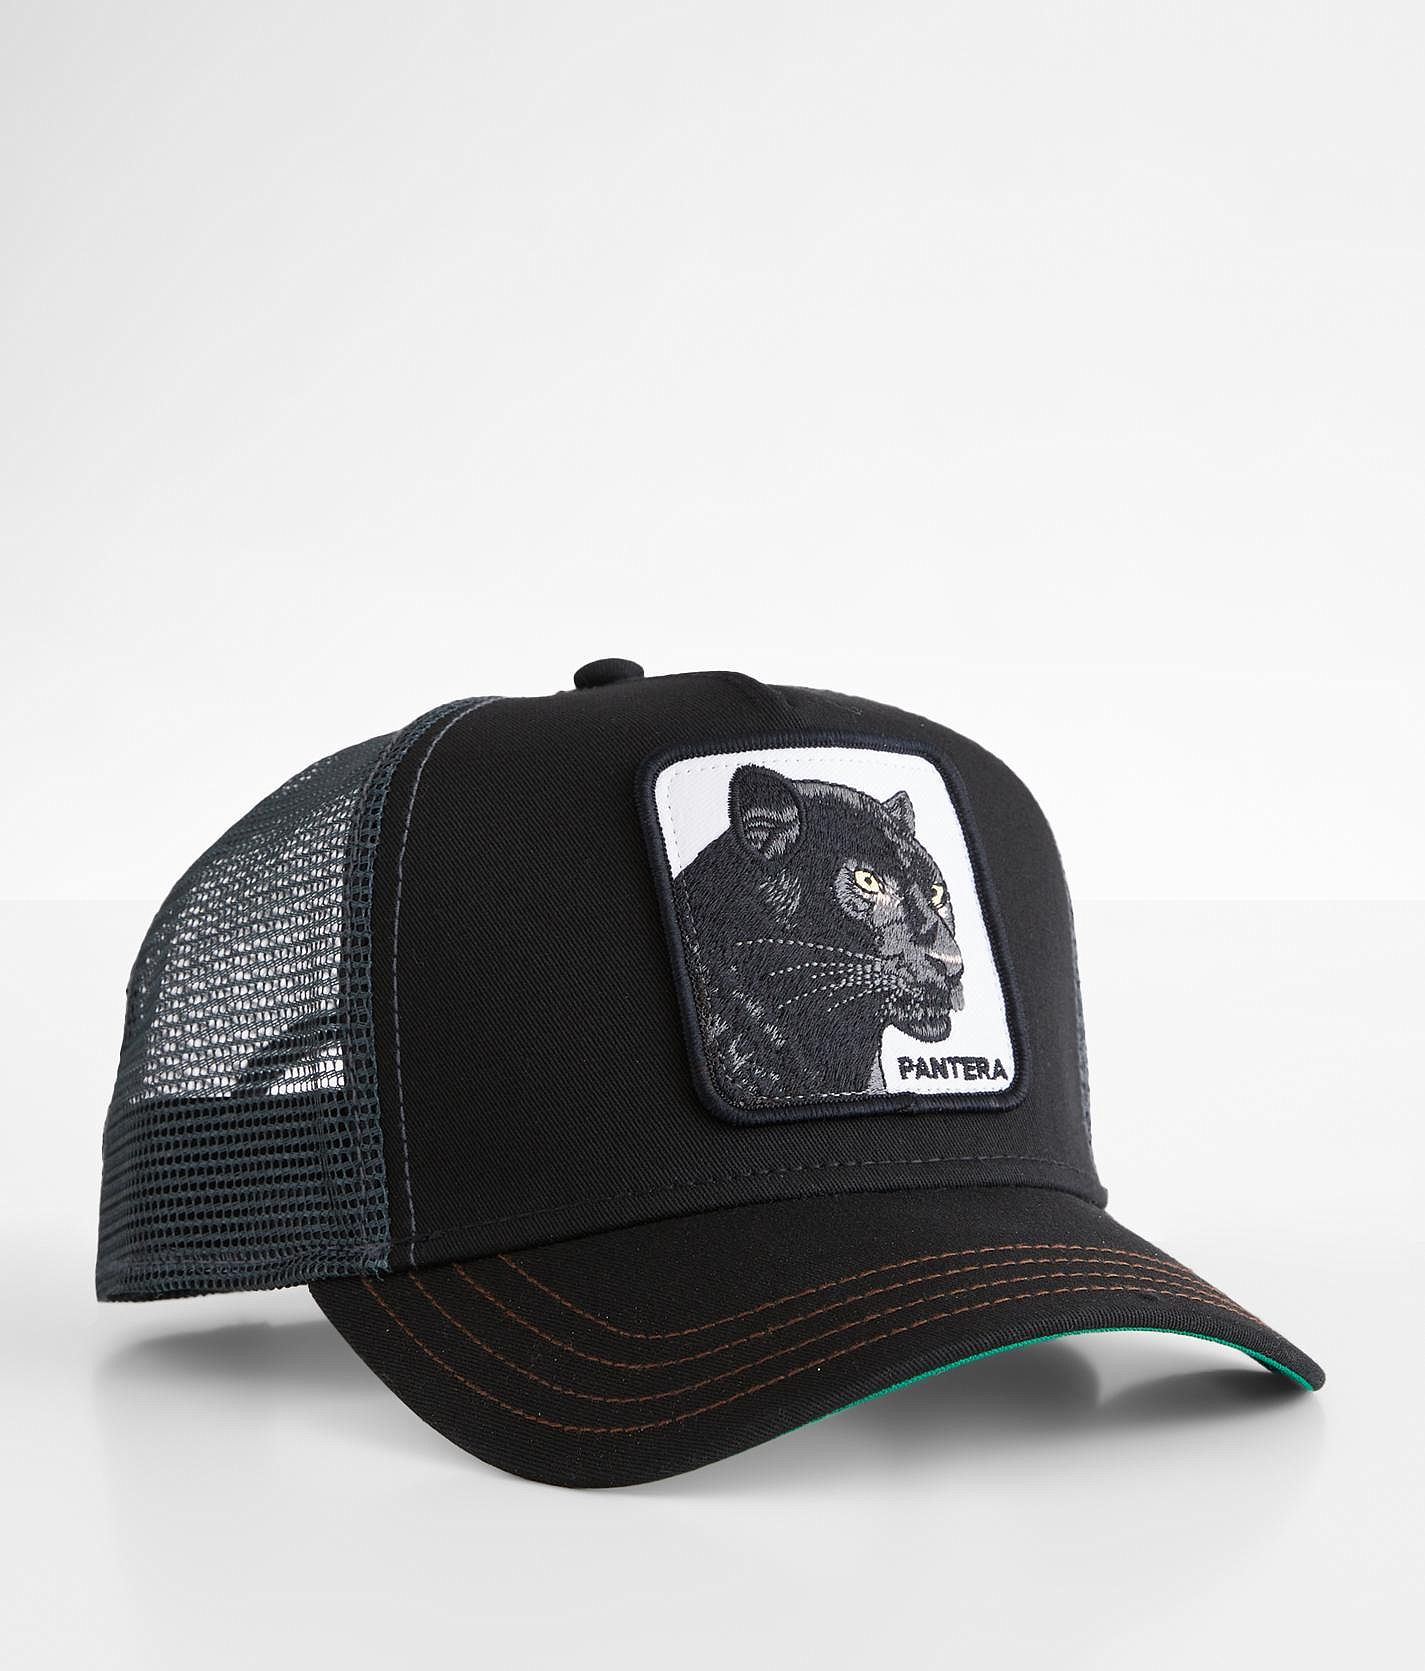 sti ledig stilling hobby Goorin Bros. Pantera Trucker Hat - Men's Hats in Black | Buckle